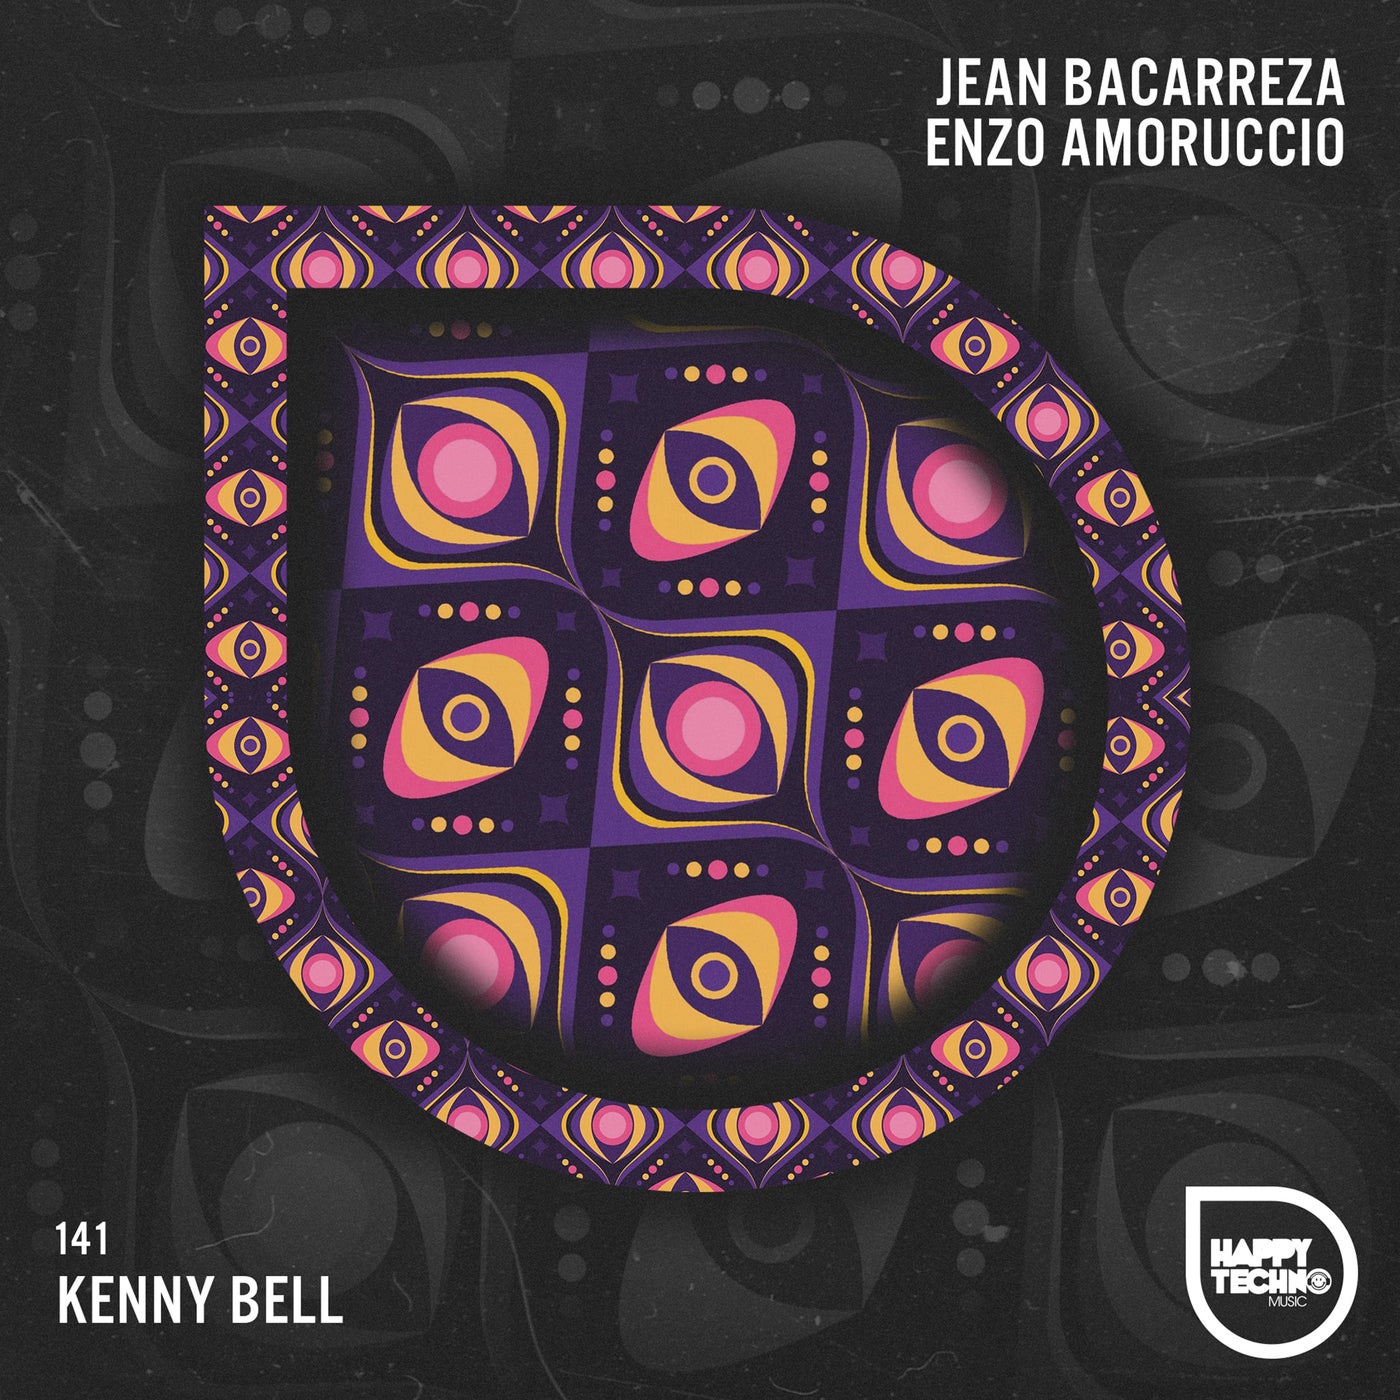 Jean Bacarreza, Enzo Amoruccio – Kenny Bell [HTM141]